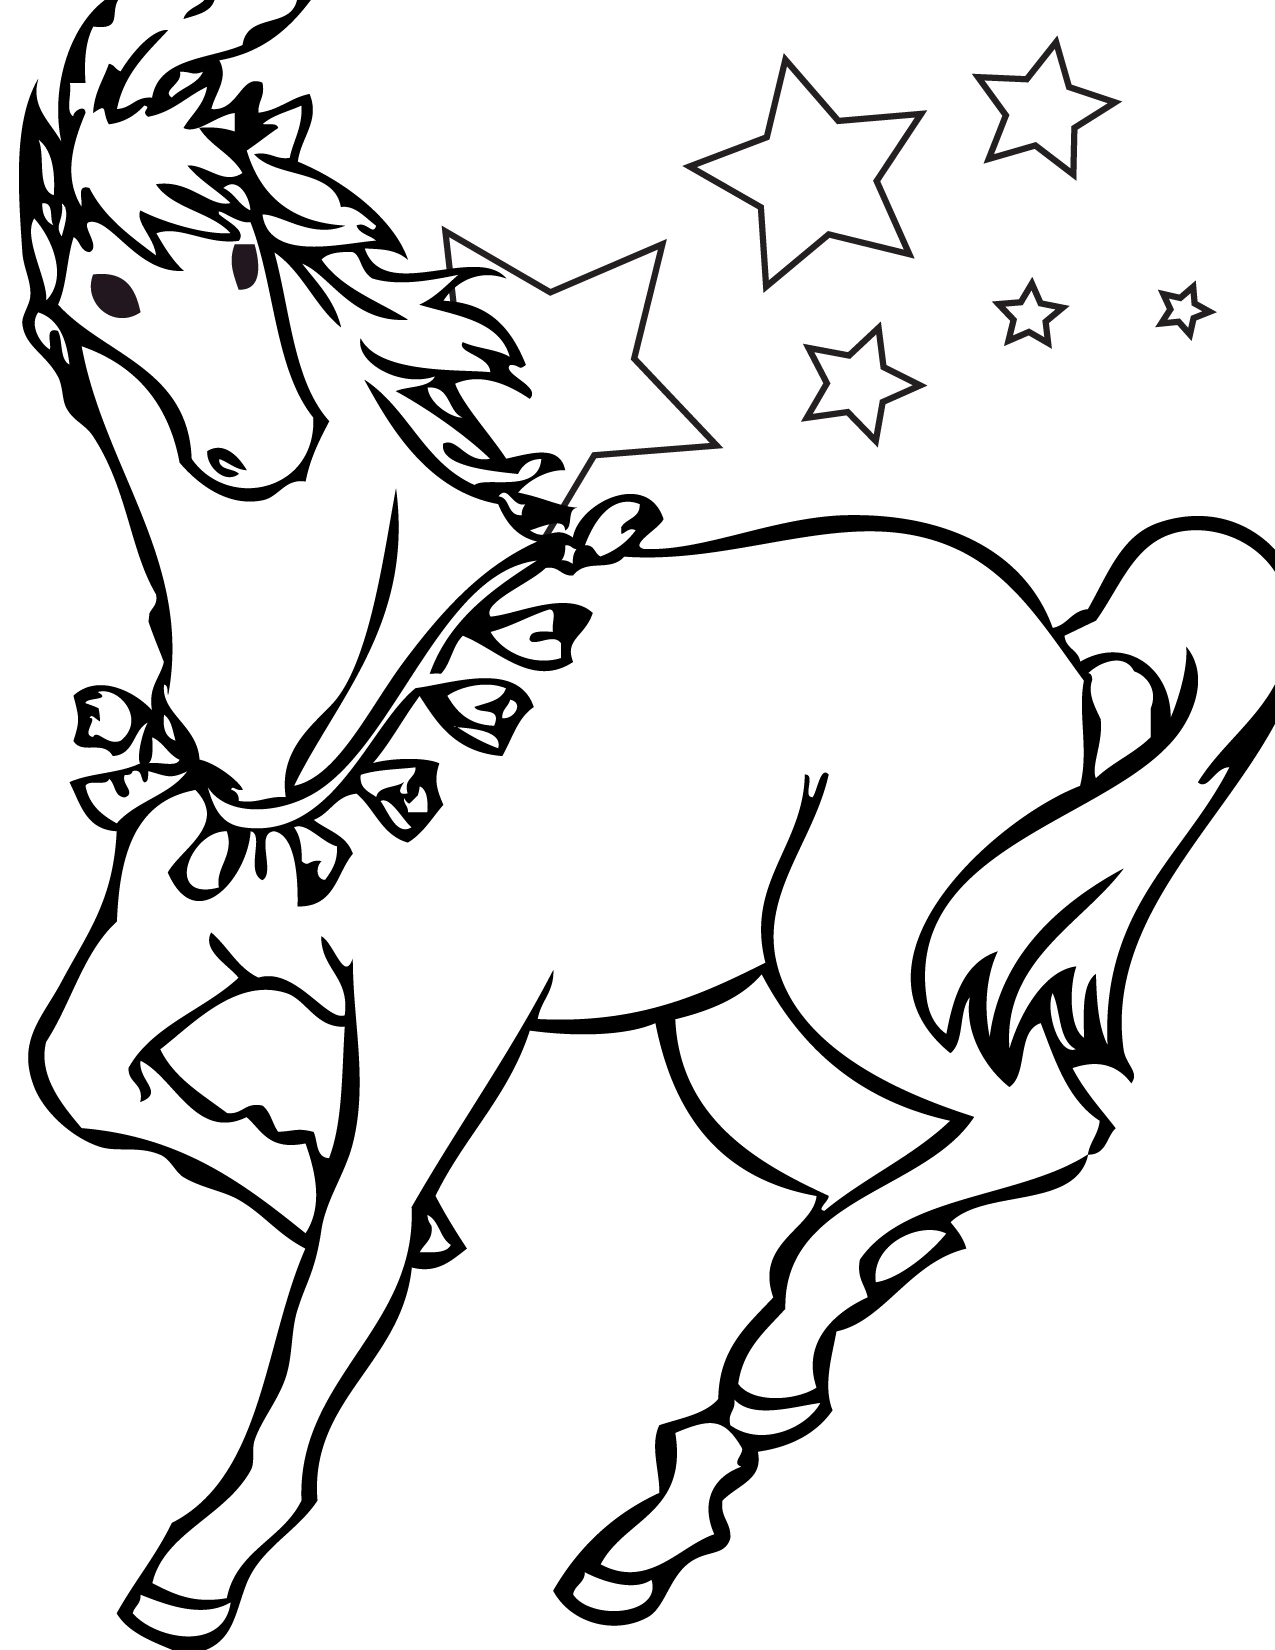 Un cavallo con le stelle disegno da colorare gratis